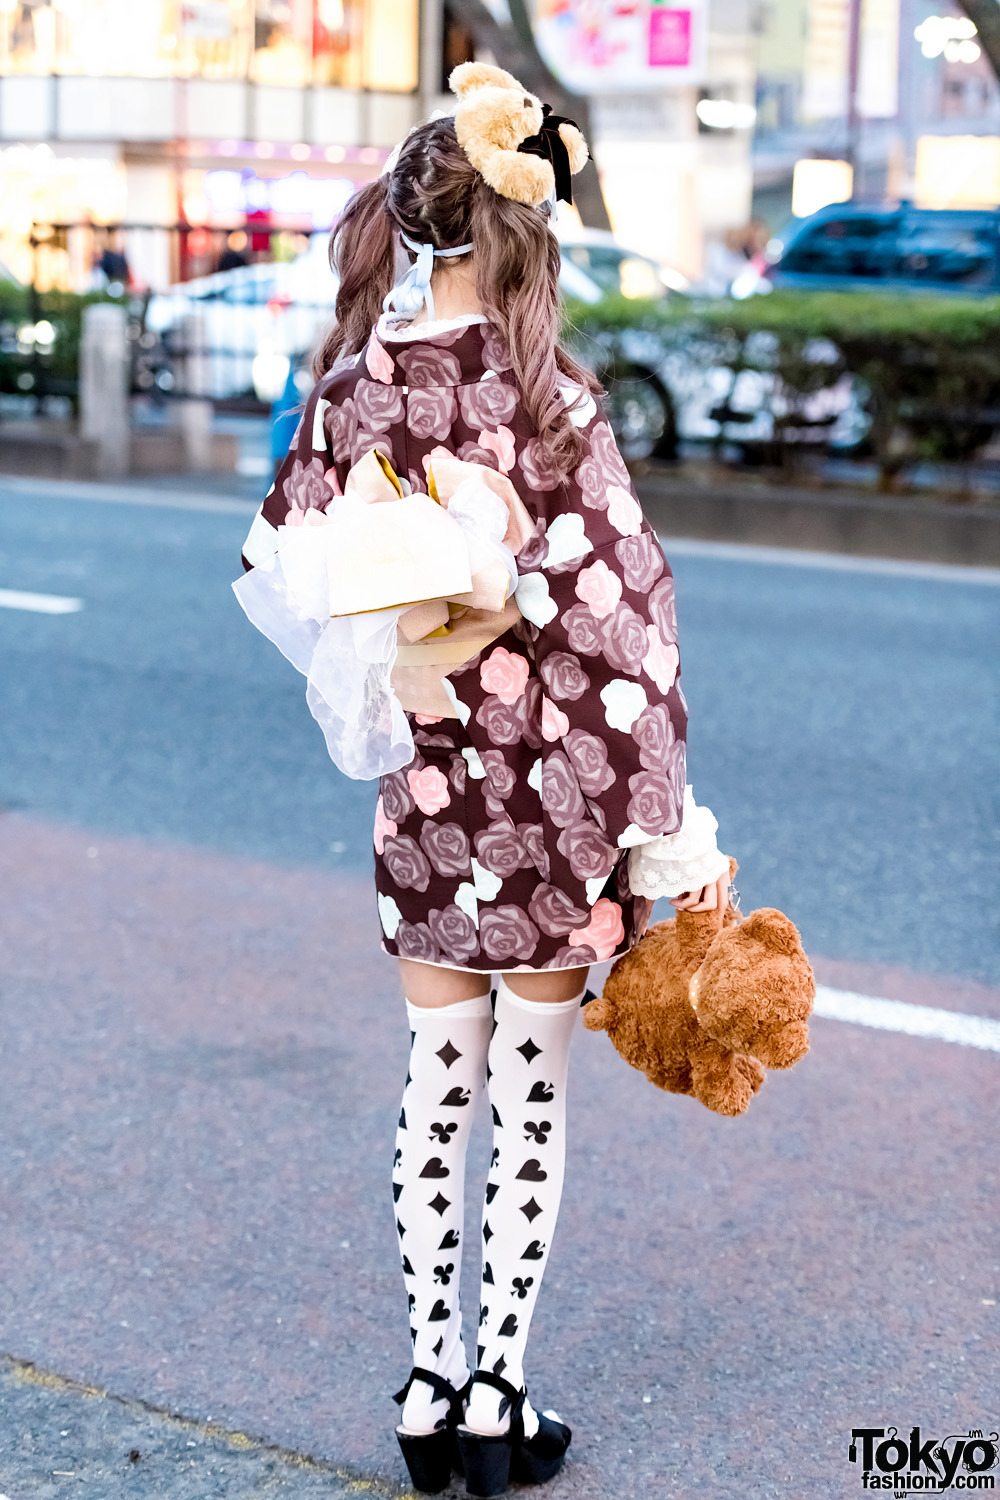 tokyo-fashion: Sakibon and Ayane on the street in Harajuku. Sakibon is wearing a